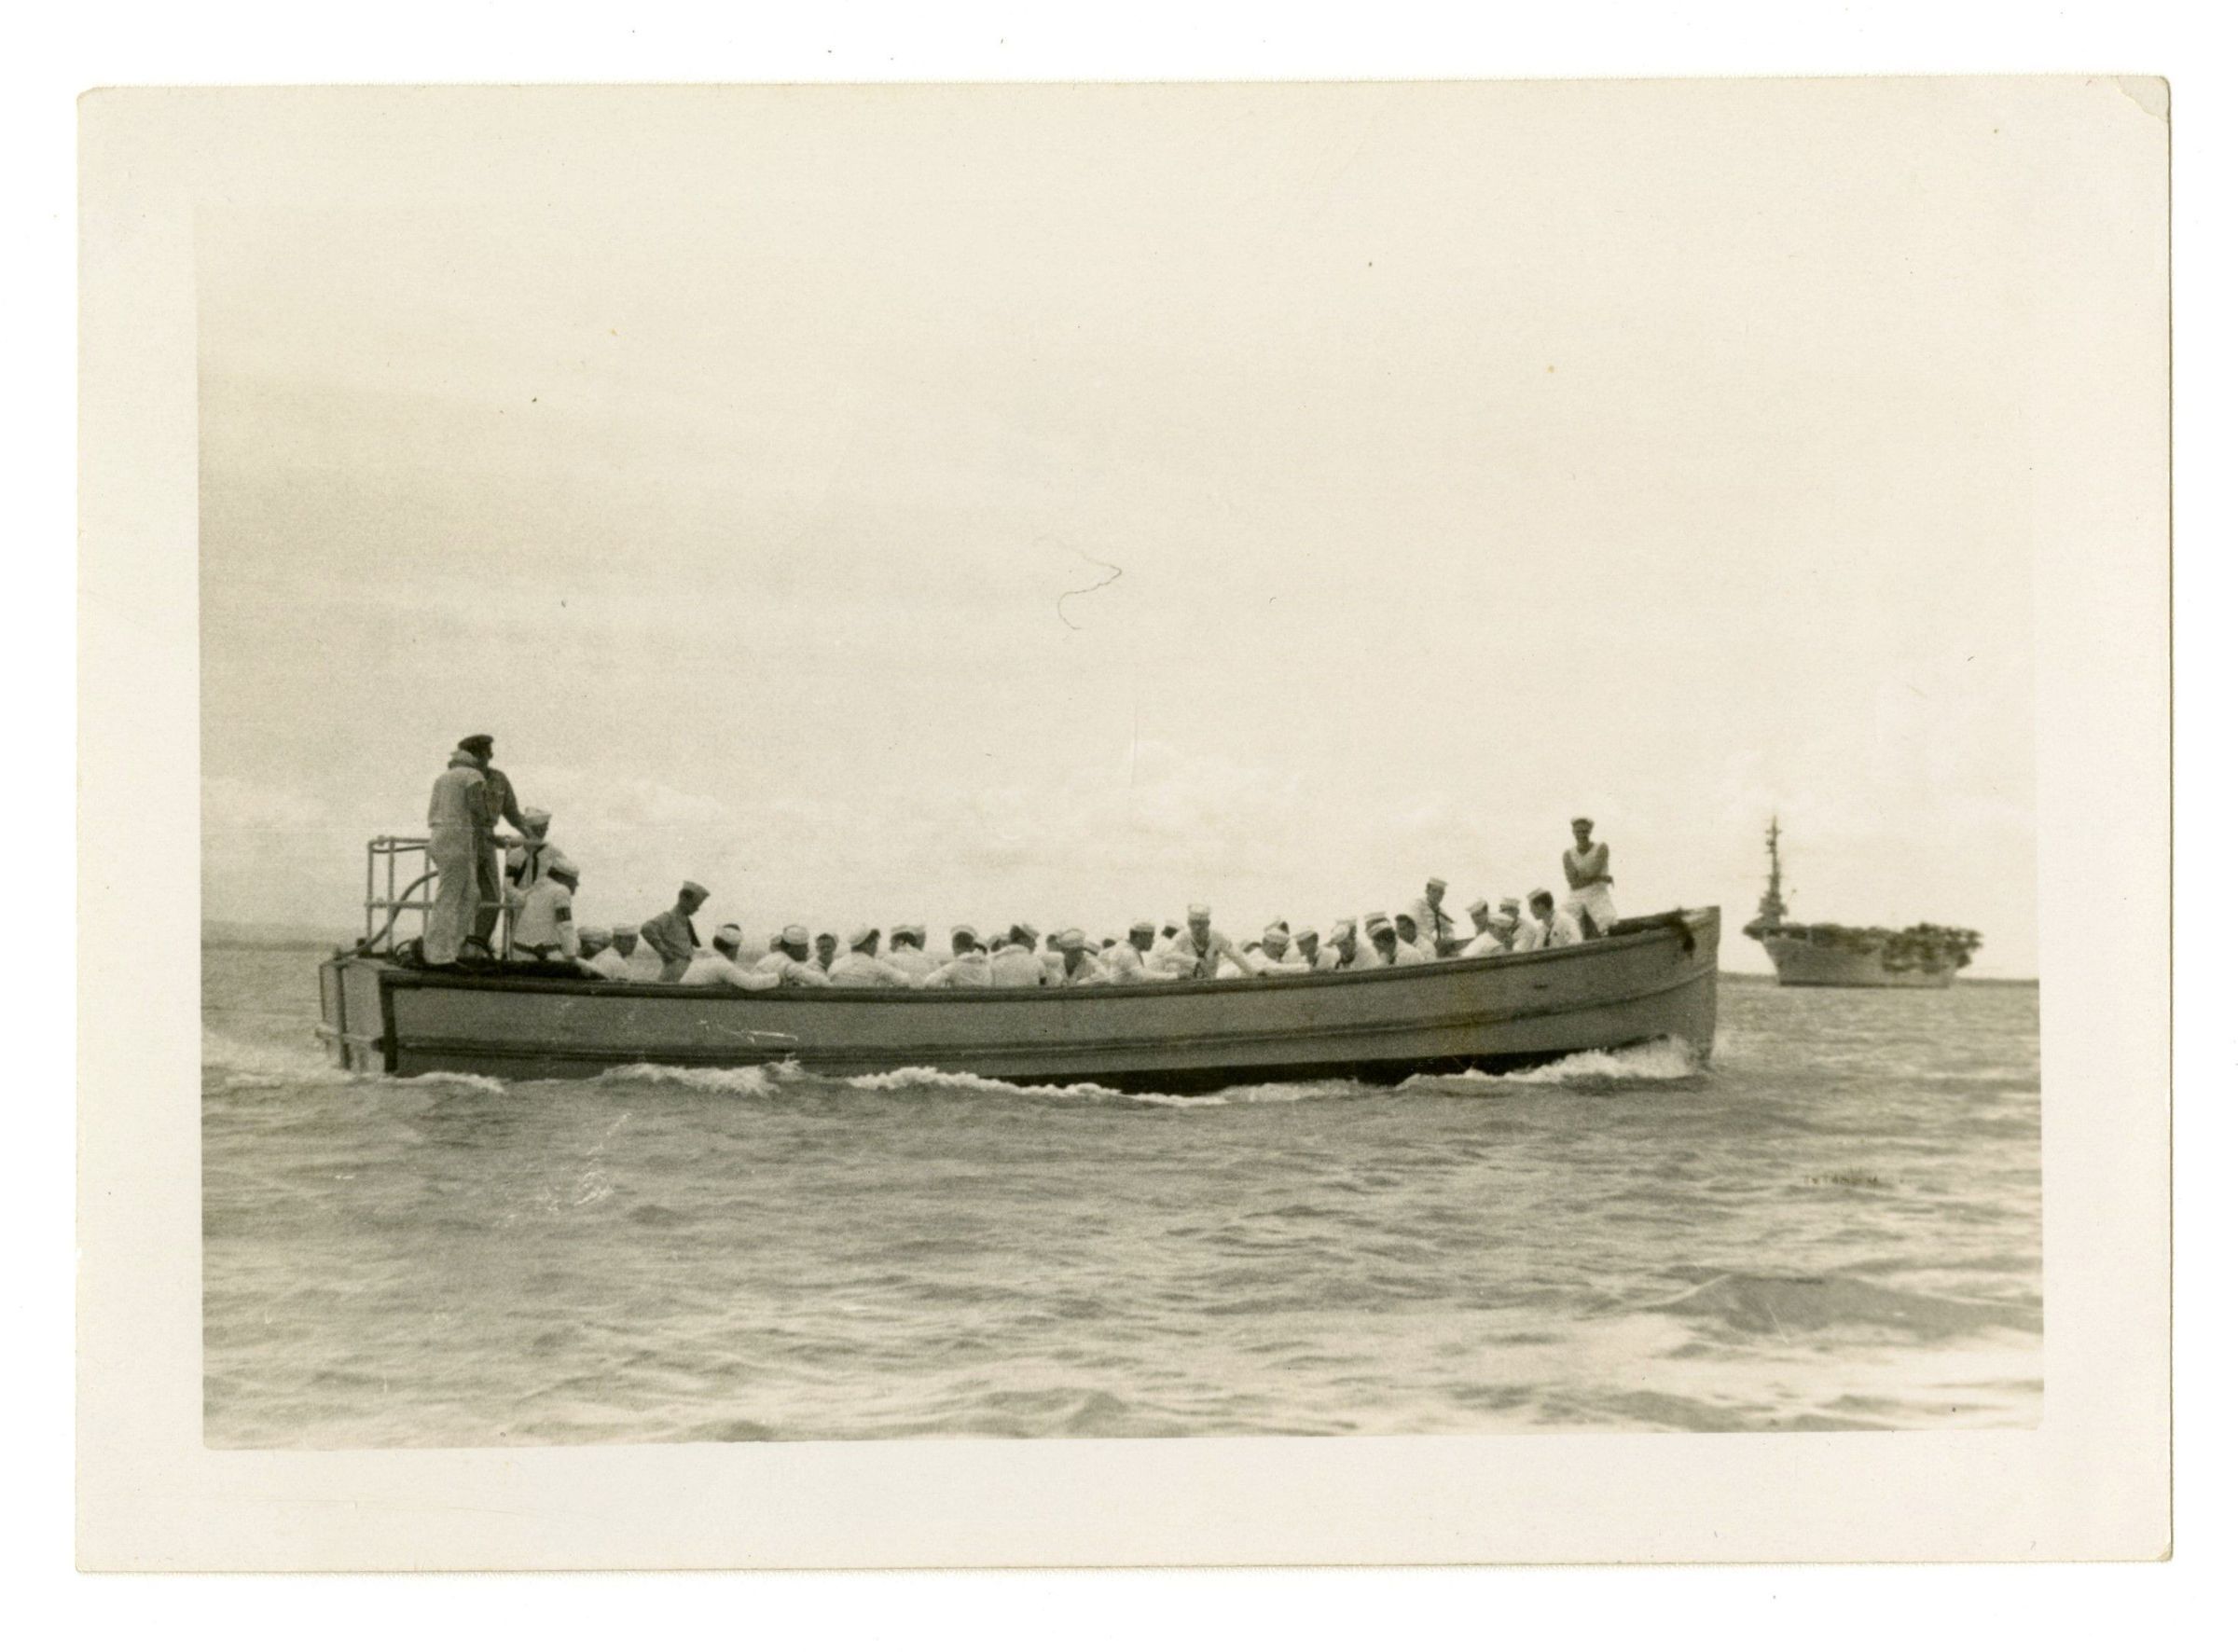 Primary Image of Liberty Launch to Ulithi Island, 1944